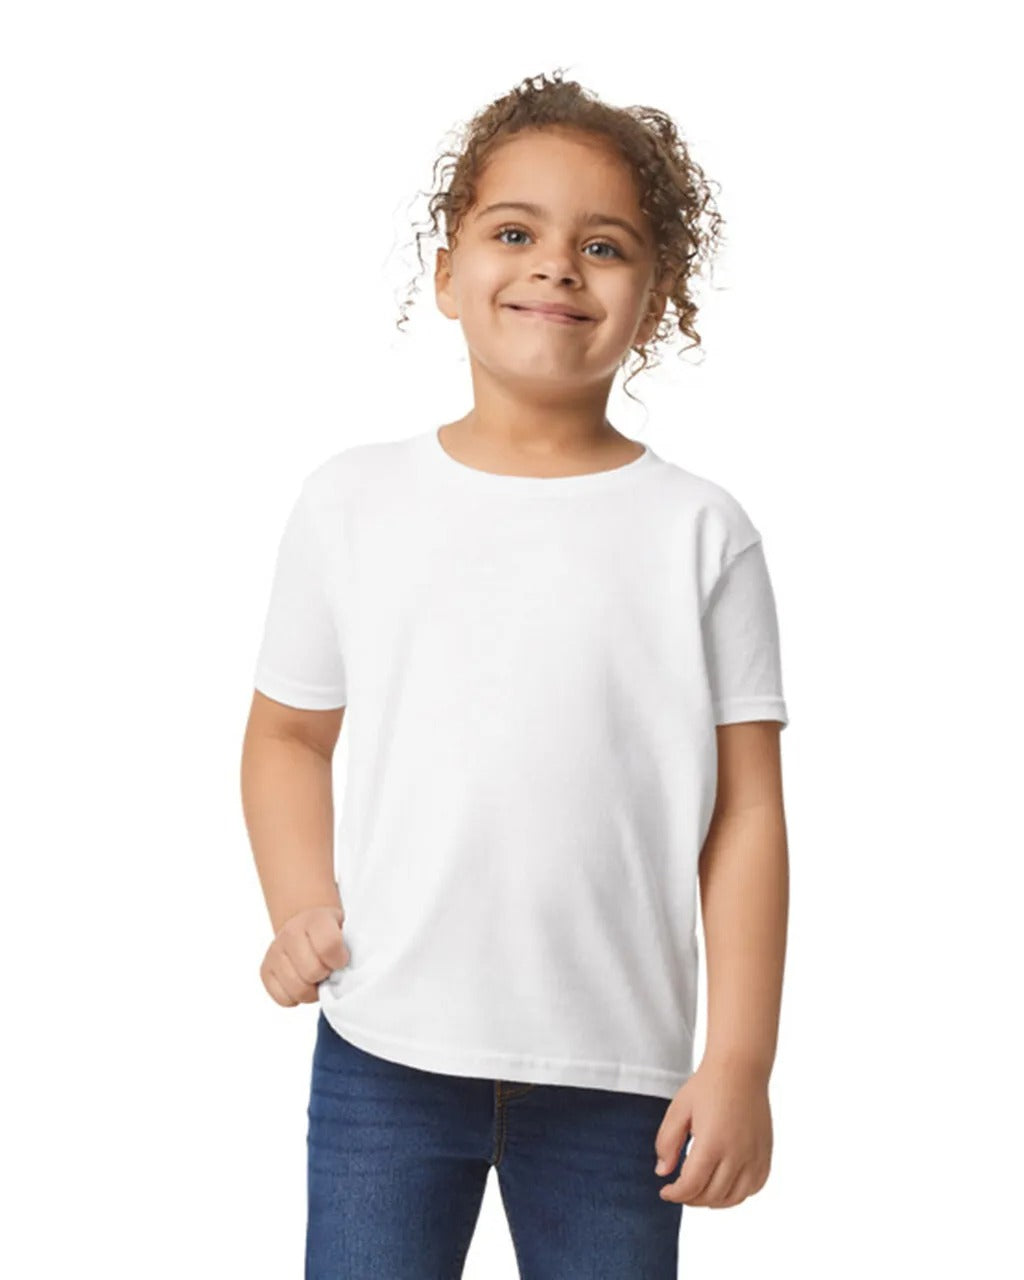 Toddlers Tshirt - White